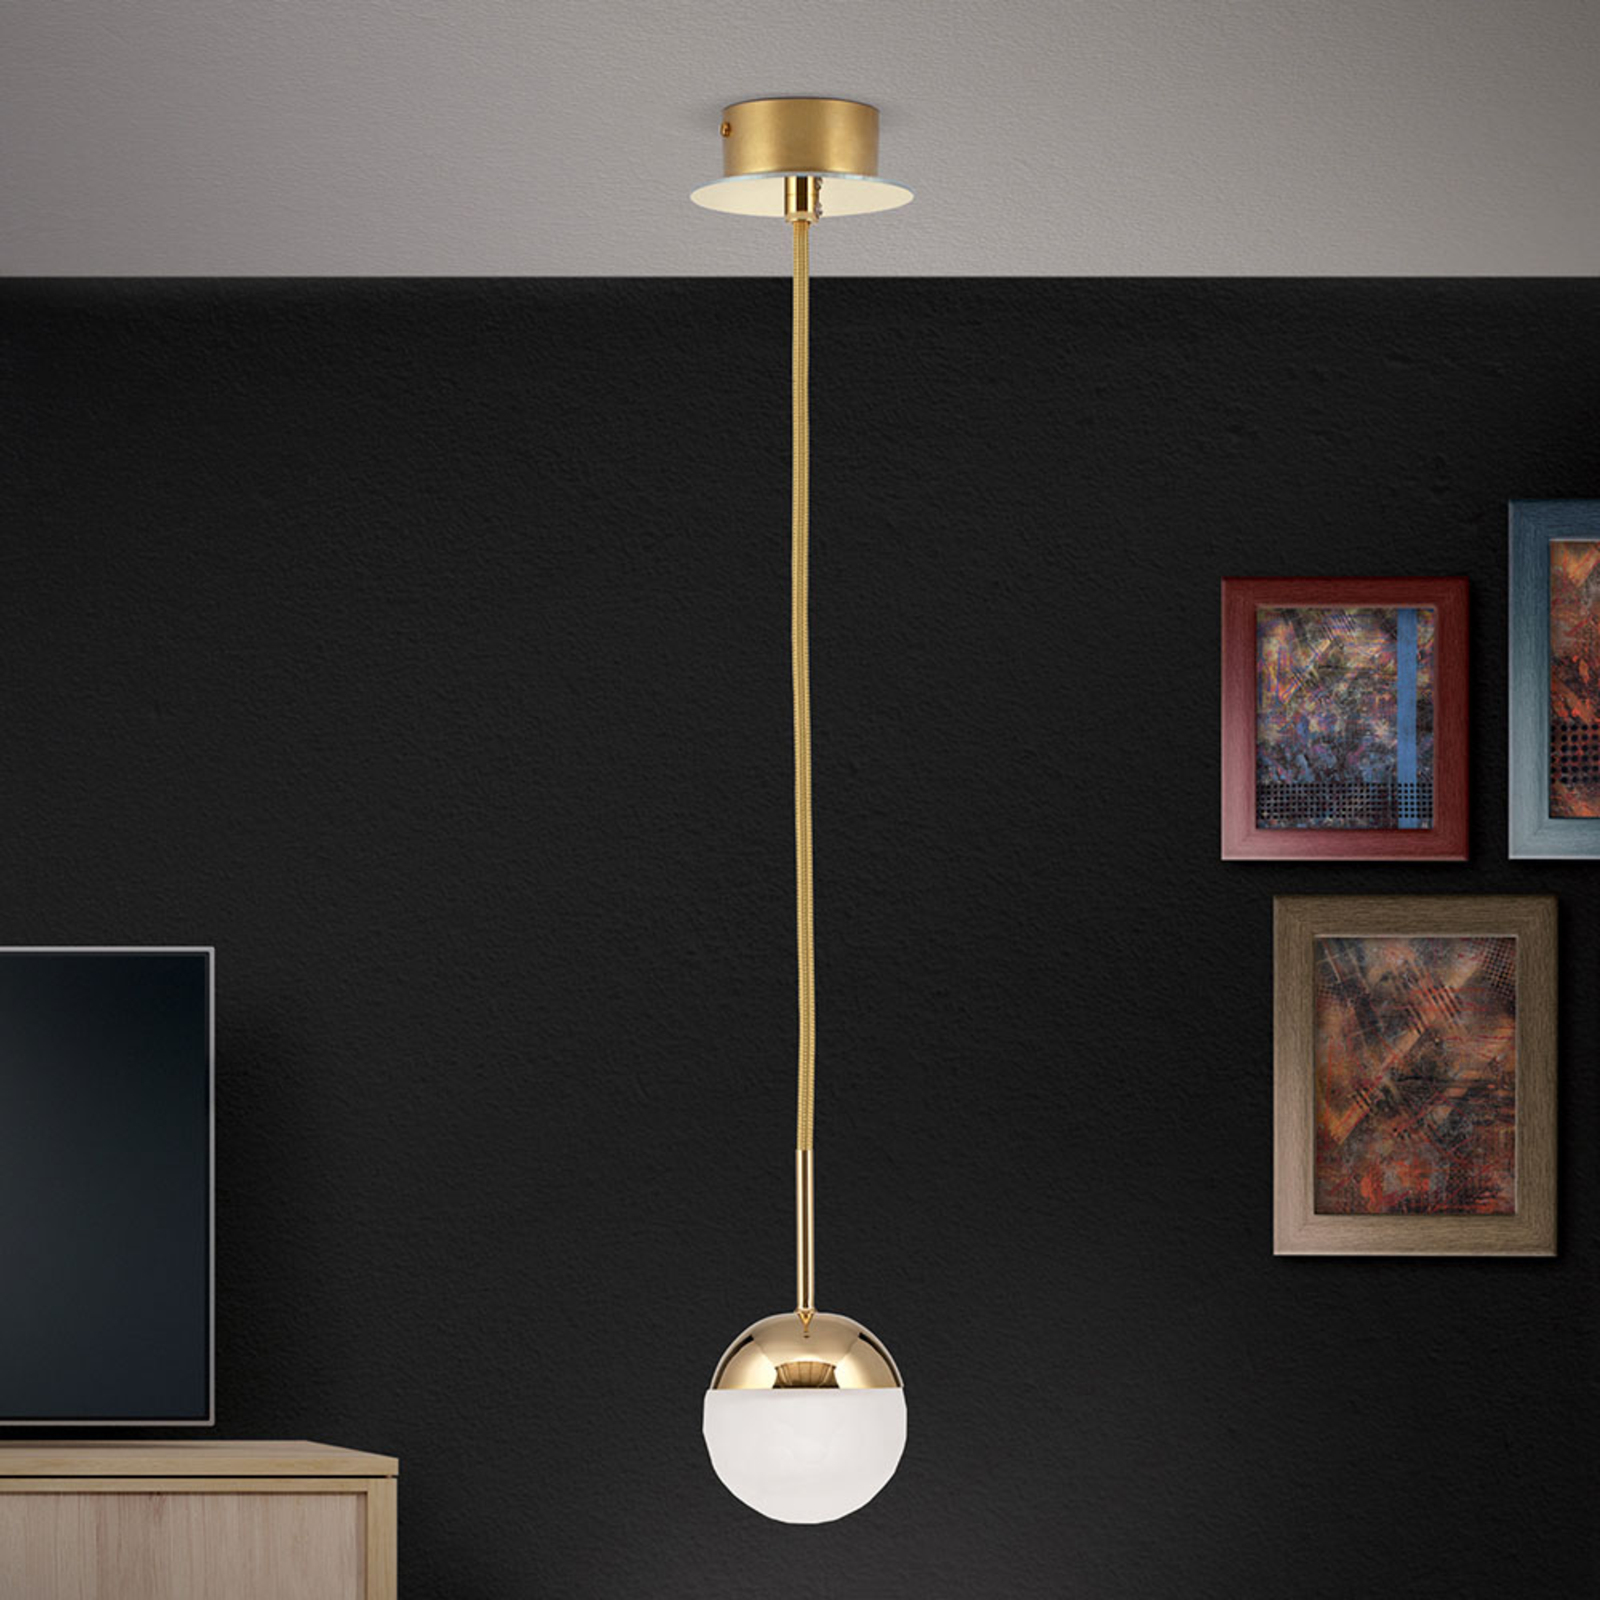 LED-hänglampa Ball, 1 lampa, guld